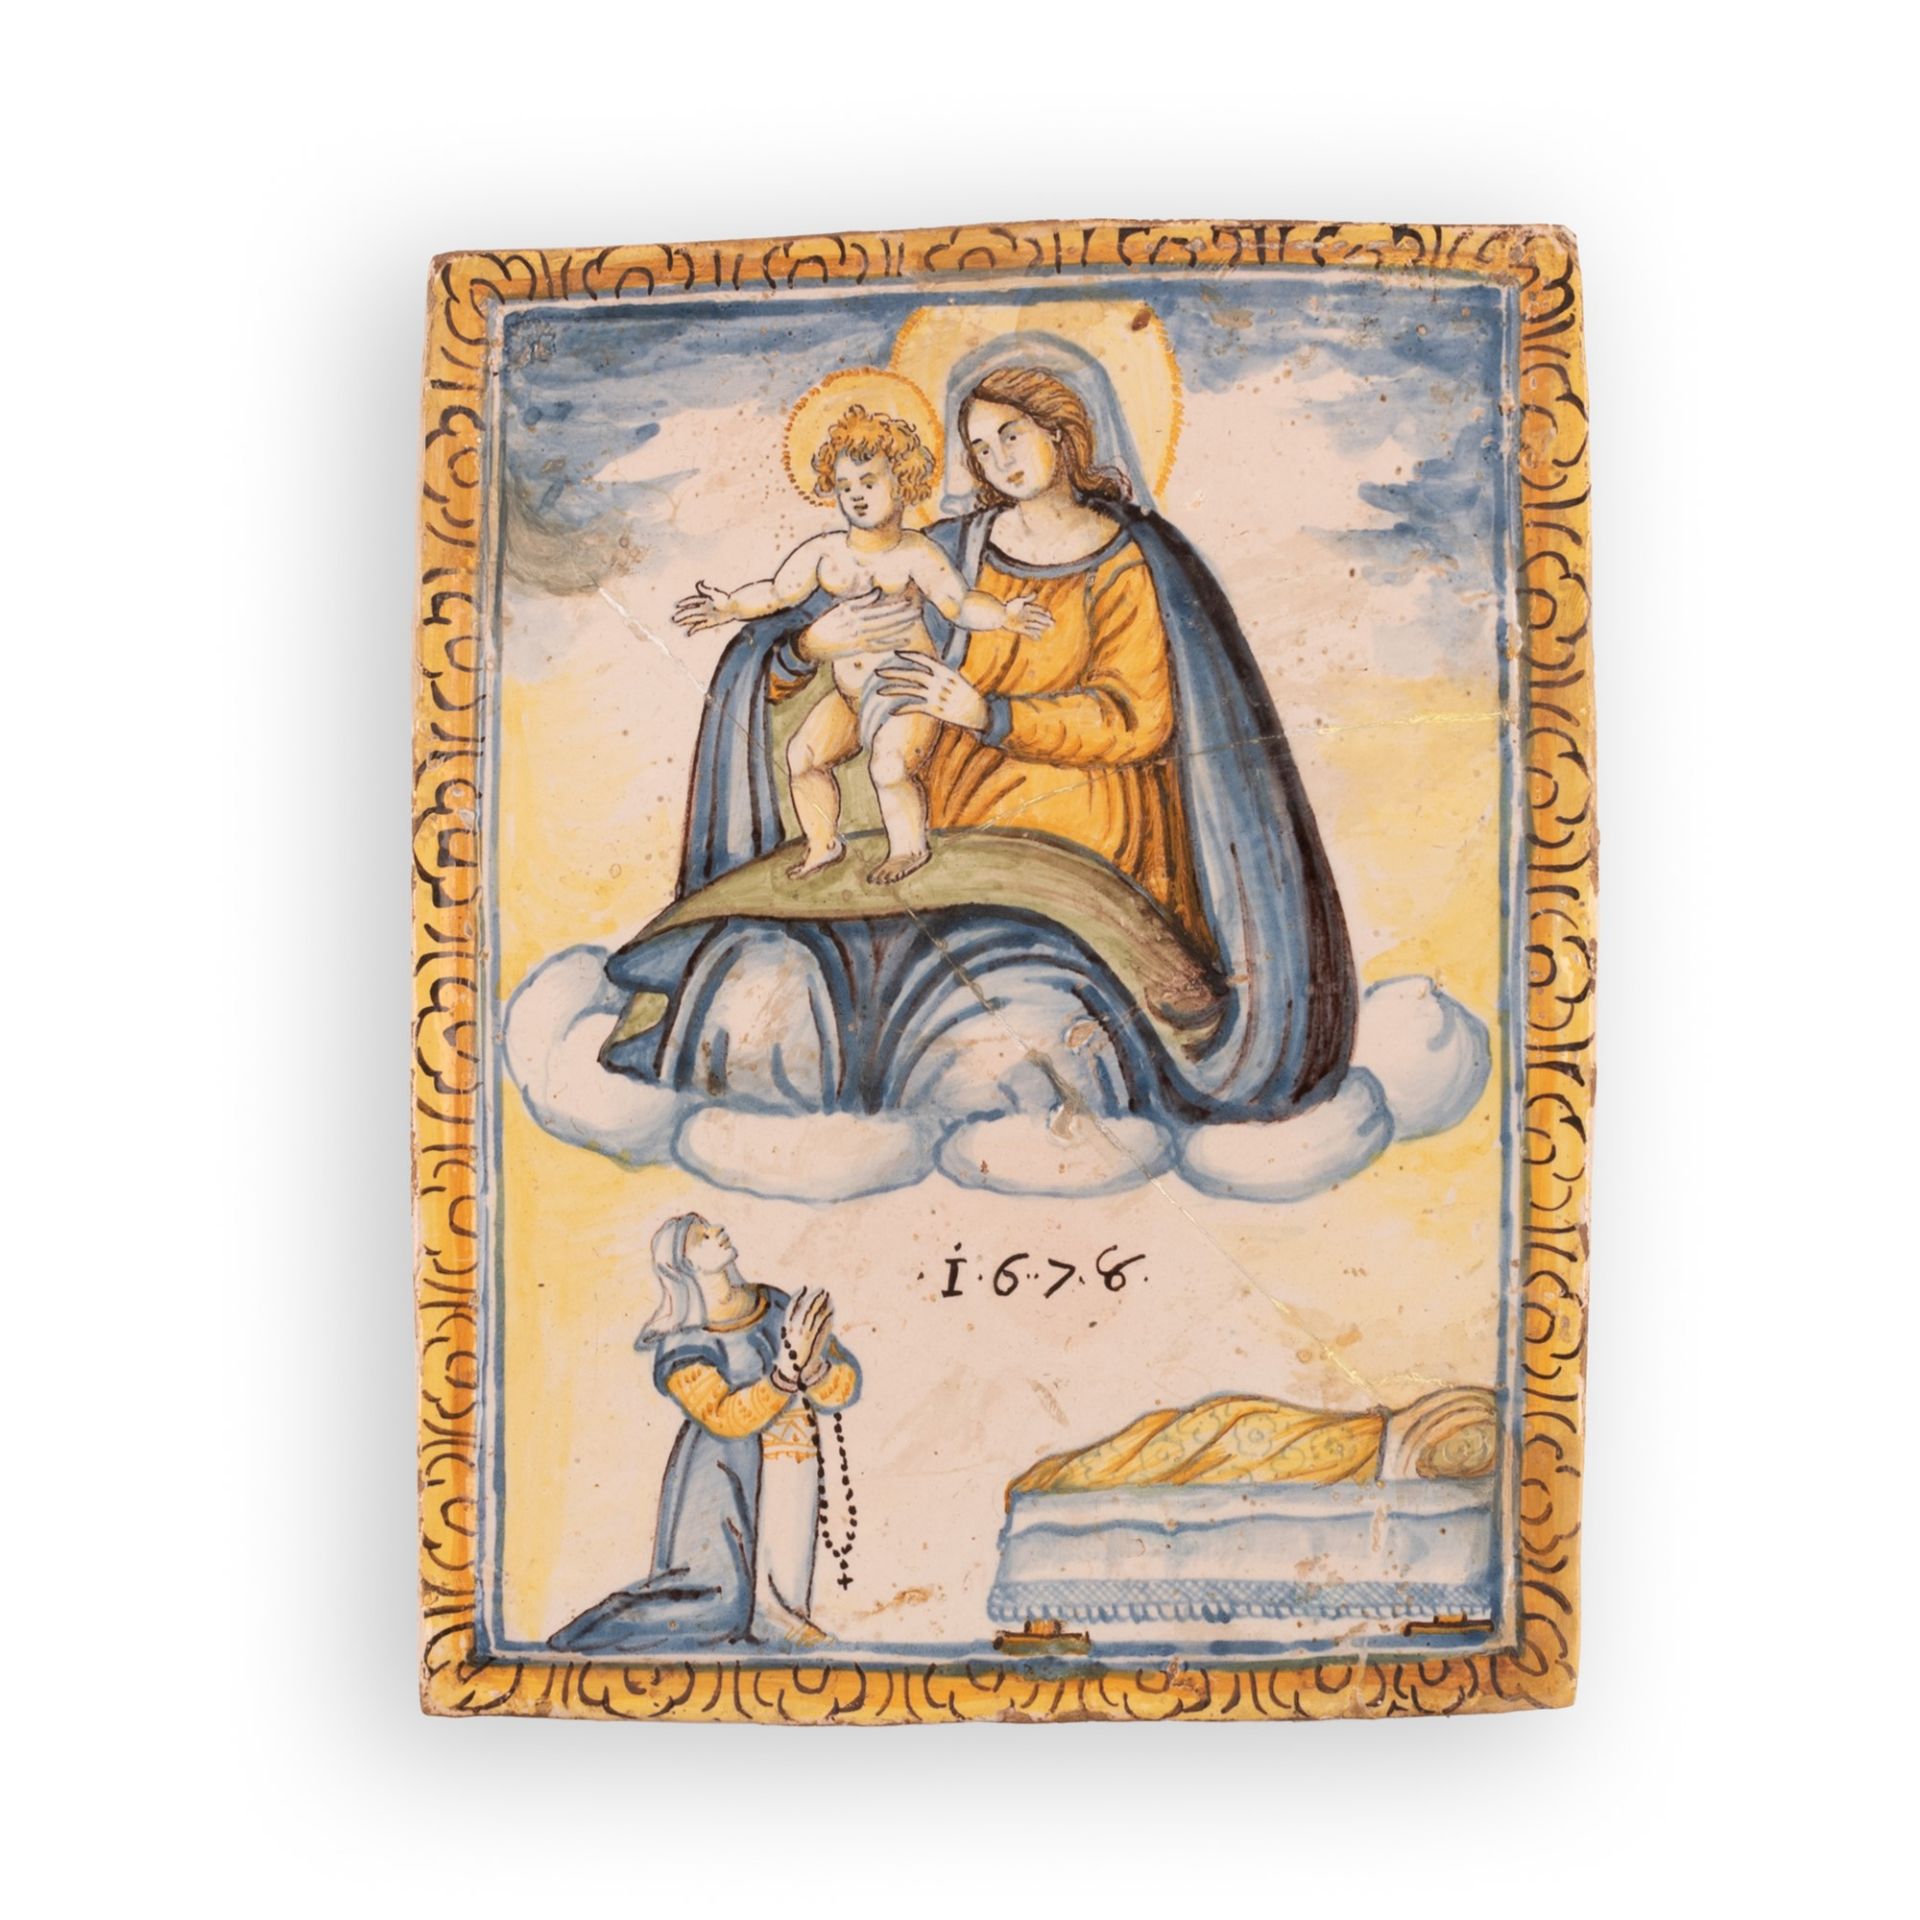 Mattonella devozionale in maiolica raffigurante l'apparizione della Madonna con il Bambino ad una fi